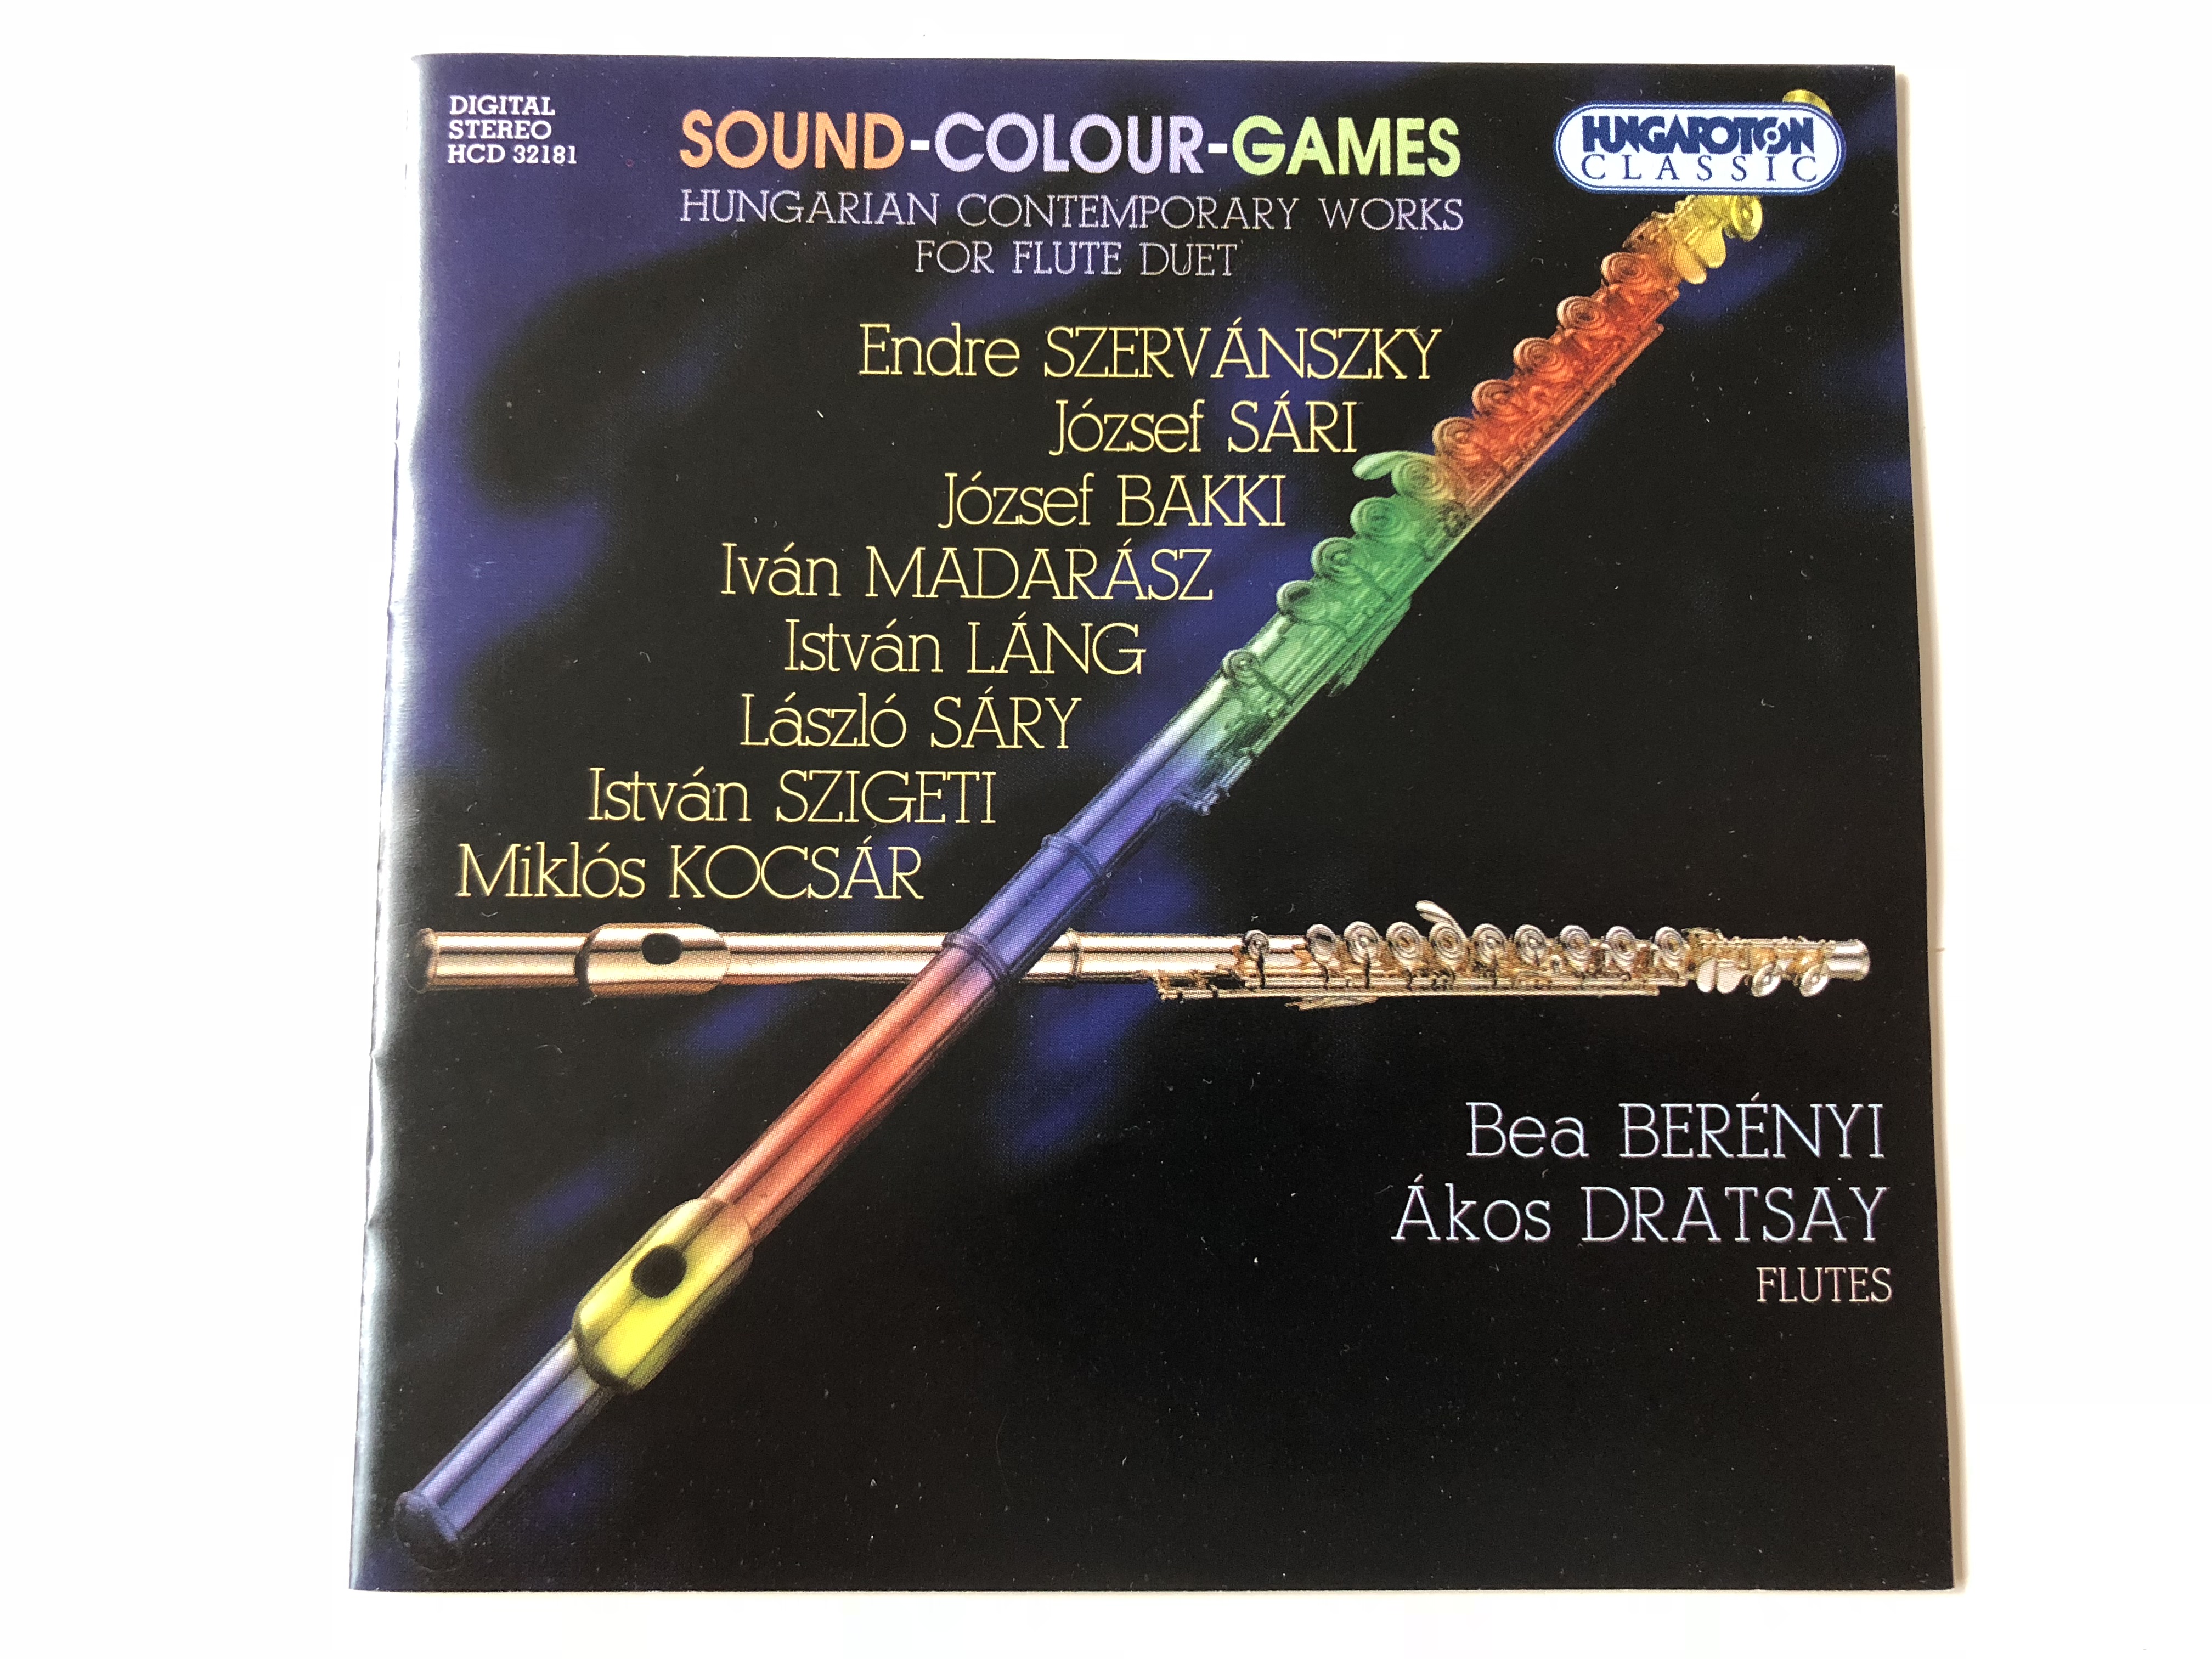 sound-colour-games-hungarian-contemporary-works-for-flute-duet-endre-szerv-nszky-j-zsef-s-ri-j-zsef-bakki-iv-n-madar-sz-istv-n-l-ng-l-szl-s-ry-istv-n-szigeti-mikl-s-kocs-r-bea-ber-nyi-kos-dratsay-flutes-hungaroto-1-.jpg